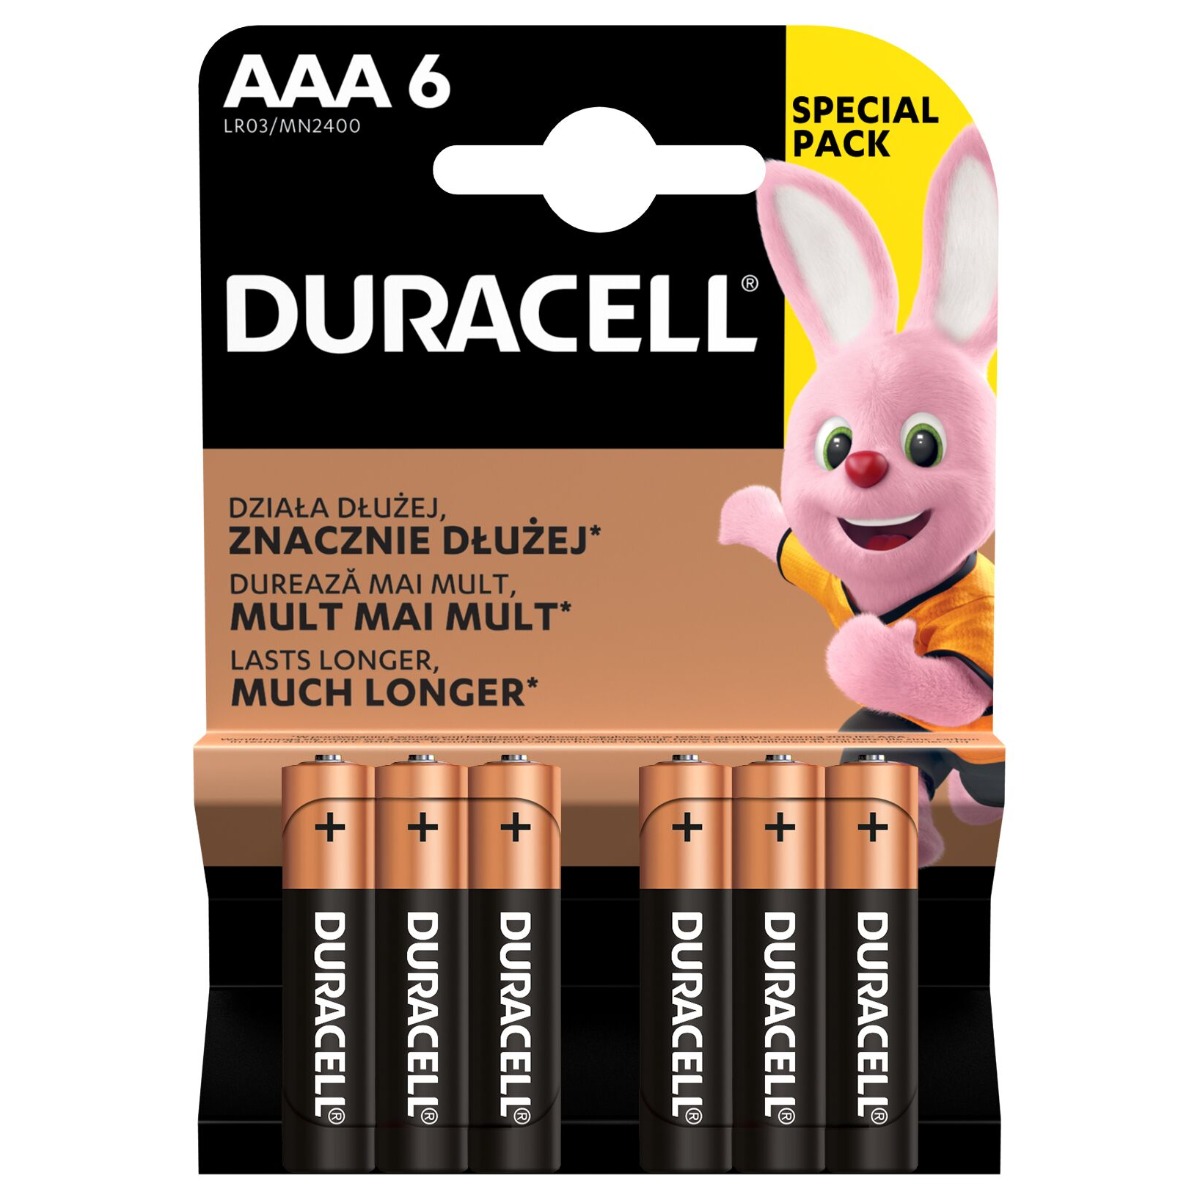 Duracell LR03 AAA 1,5V Alkalne baterije zadovoljavaju najviše standarde kvalitete i nude izvrsnu pouzdanost. U pakovanju 6 komada gratis.